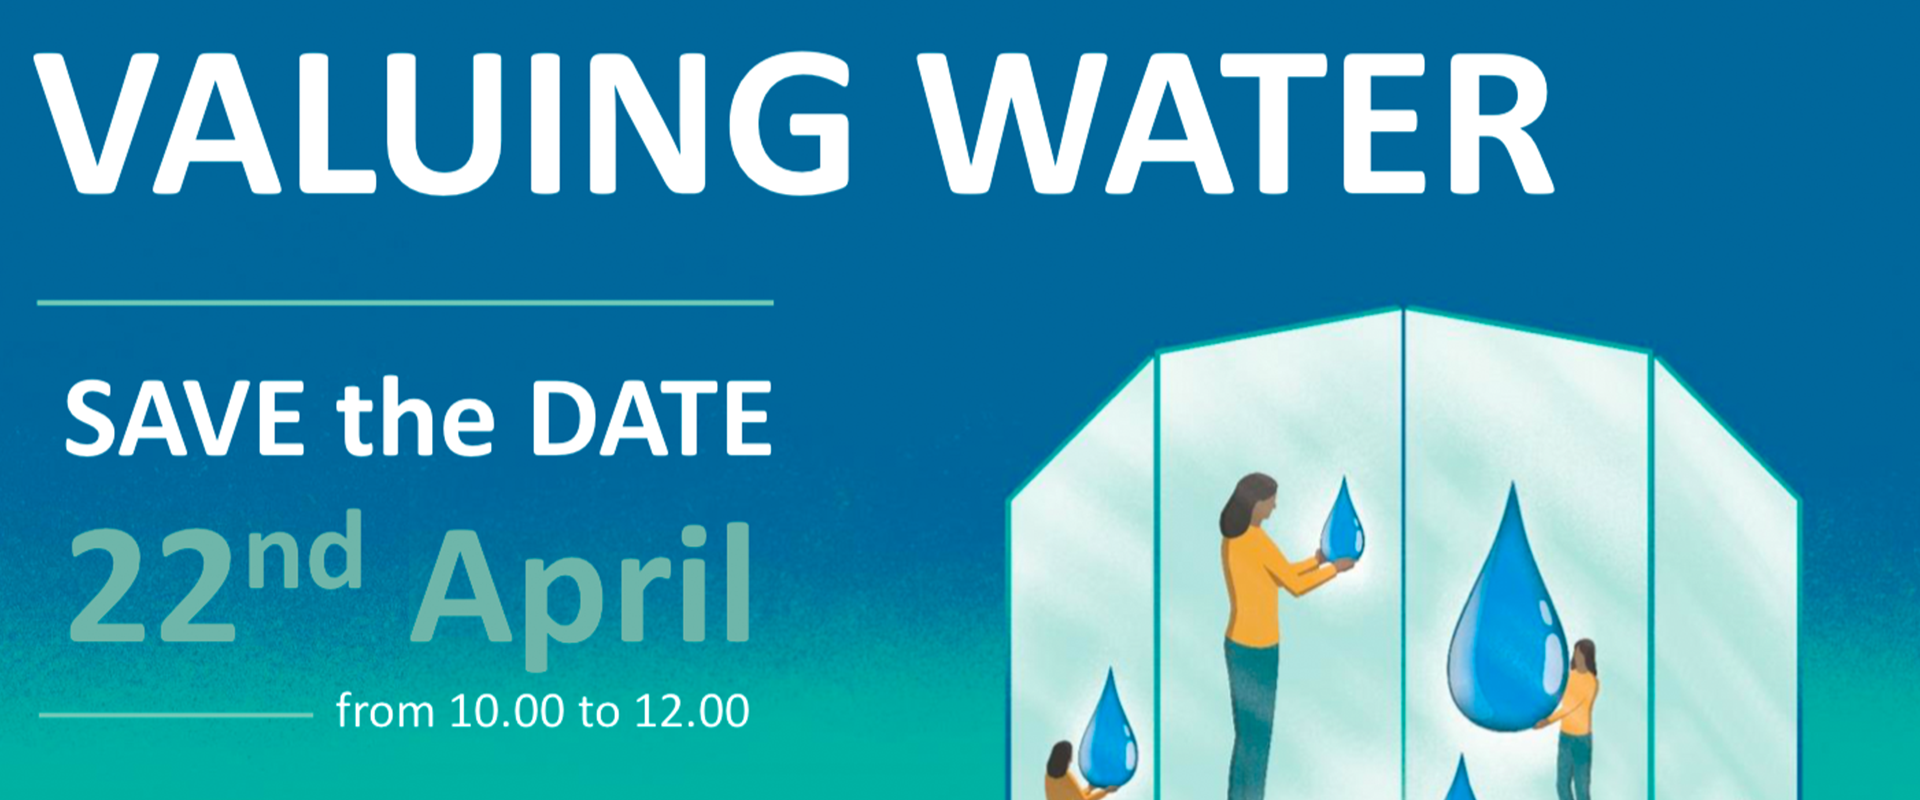 Valuing Water - Webinar, 22 April 2021